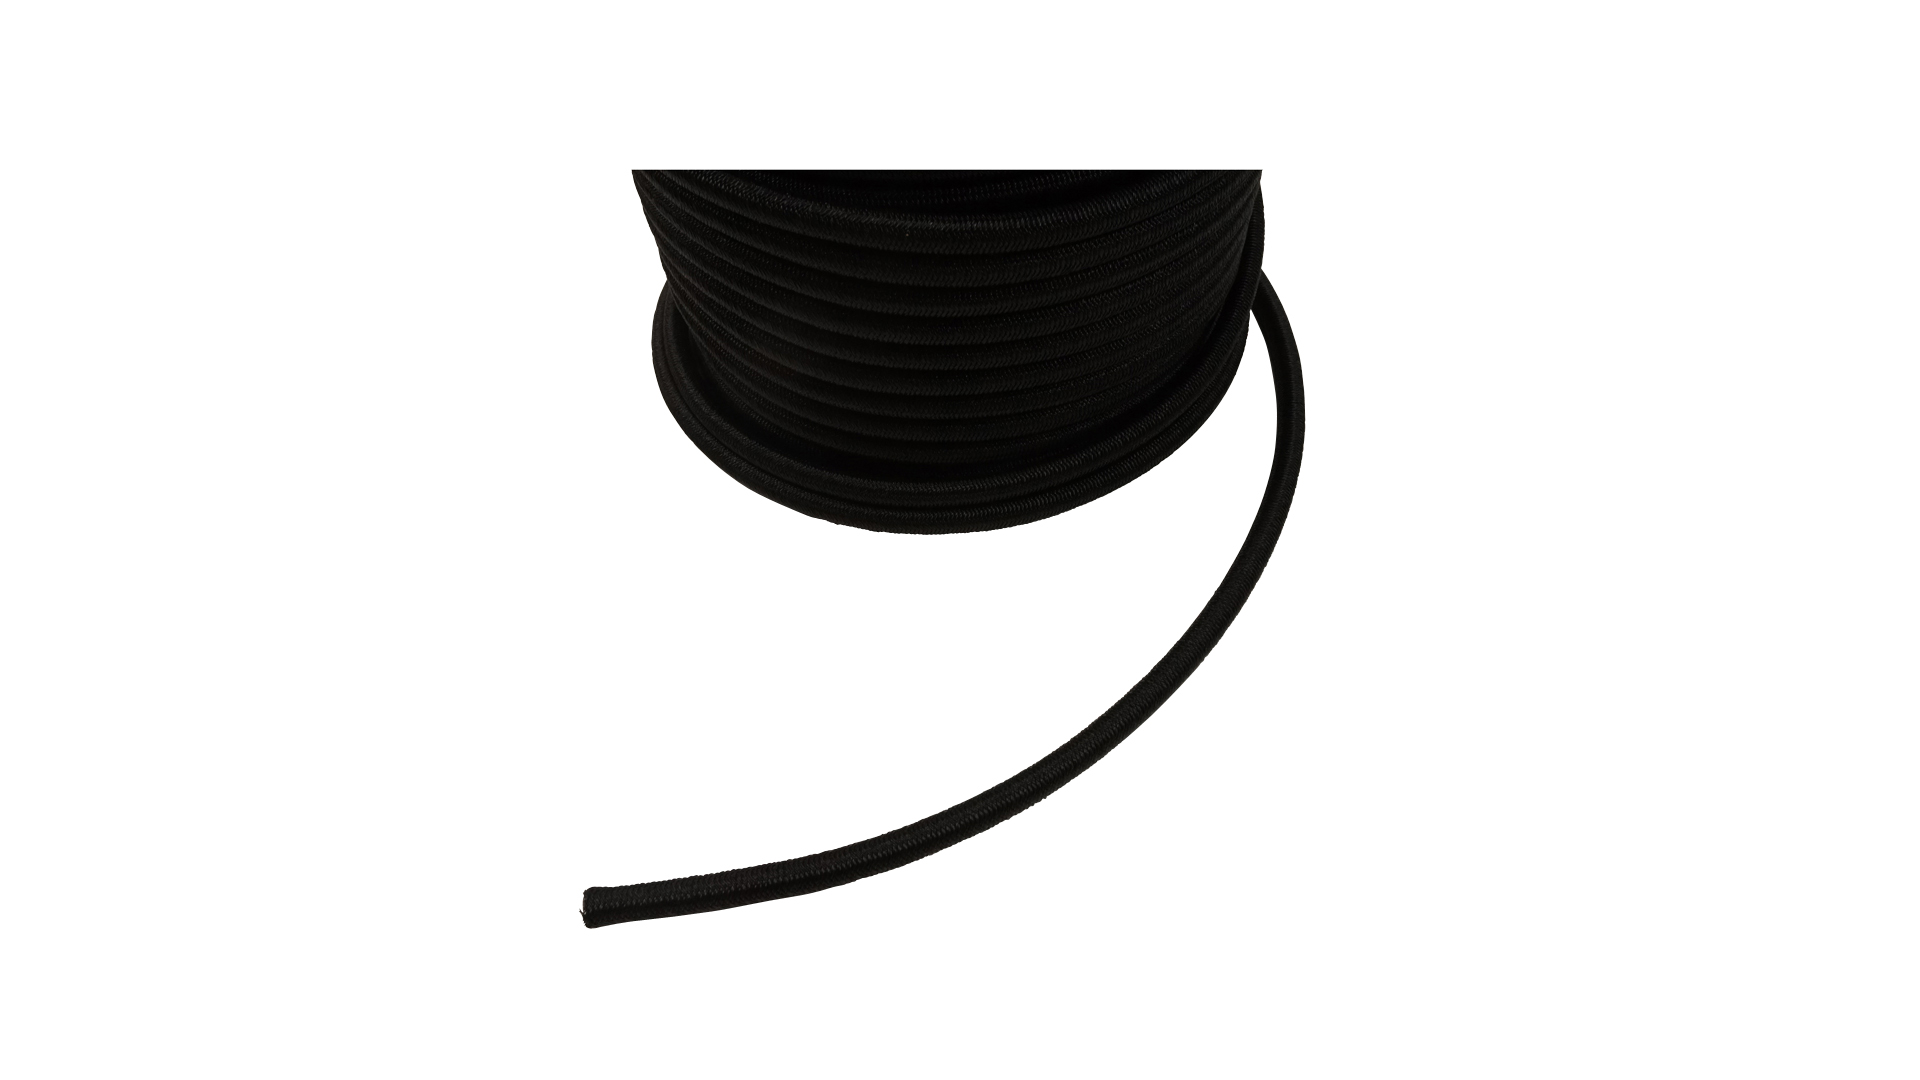 Anhängerersatzteil Gummi-Expander-Seil schwarz, 6 mm stark